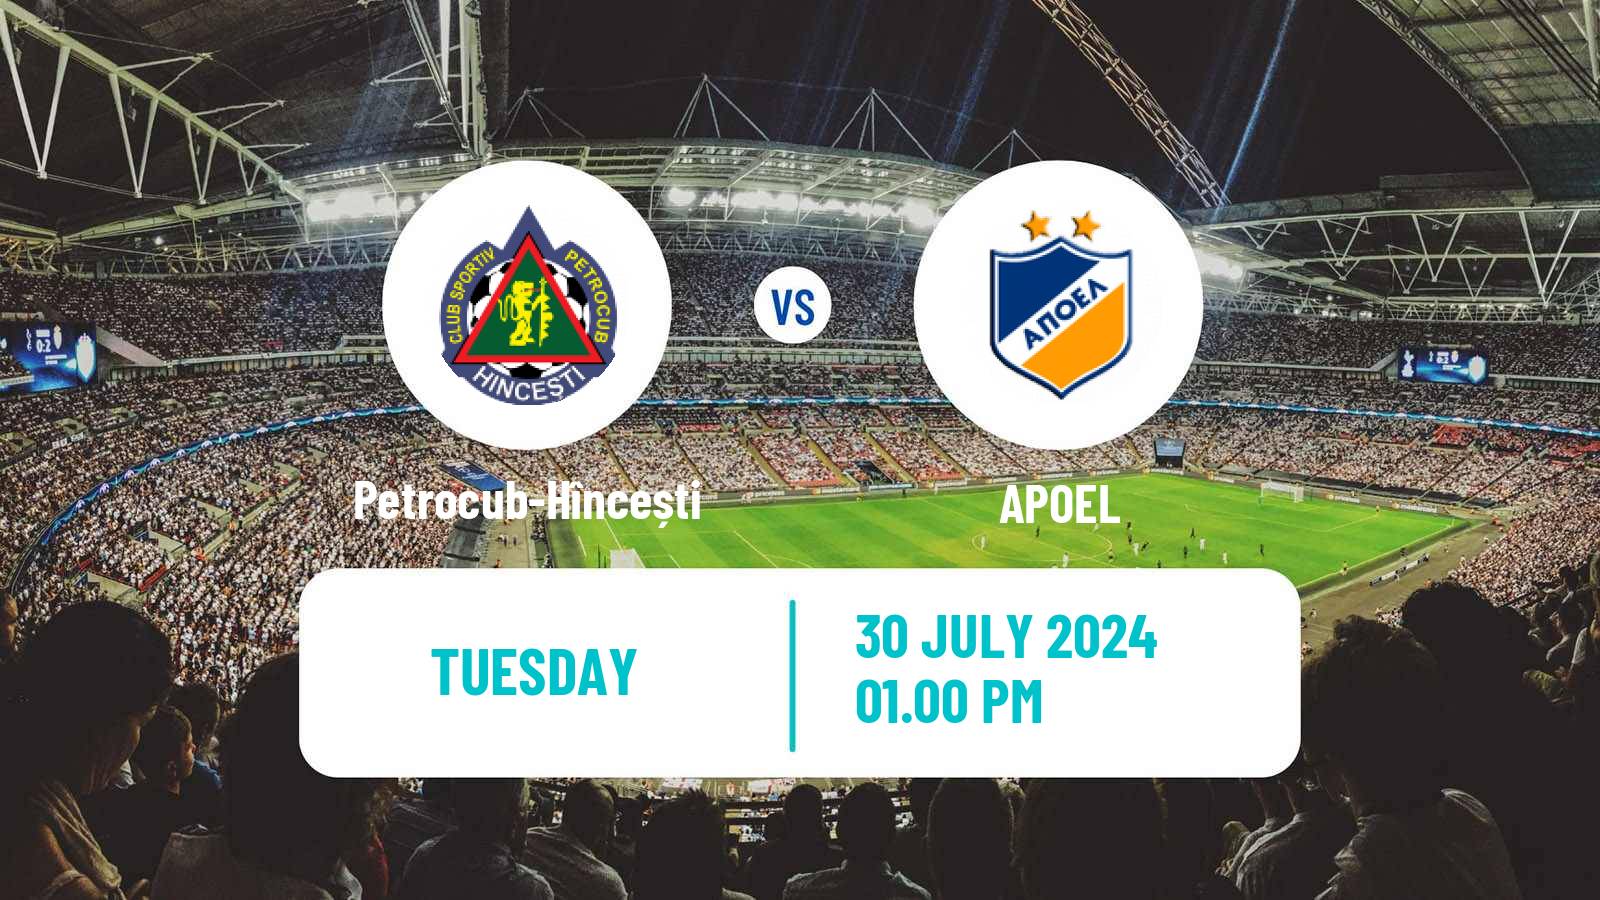 Soccer UEFA Champions League Petrocub-Hîncești - APOEL